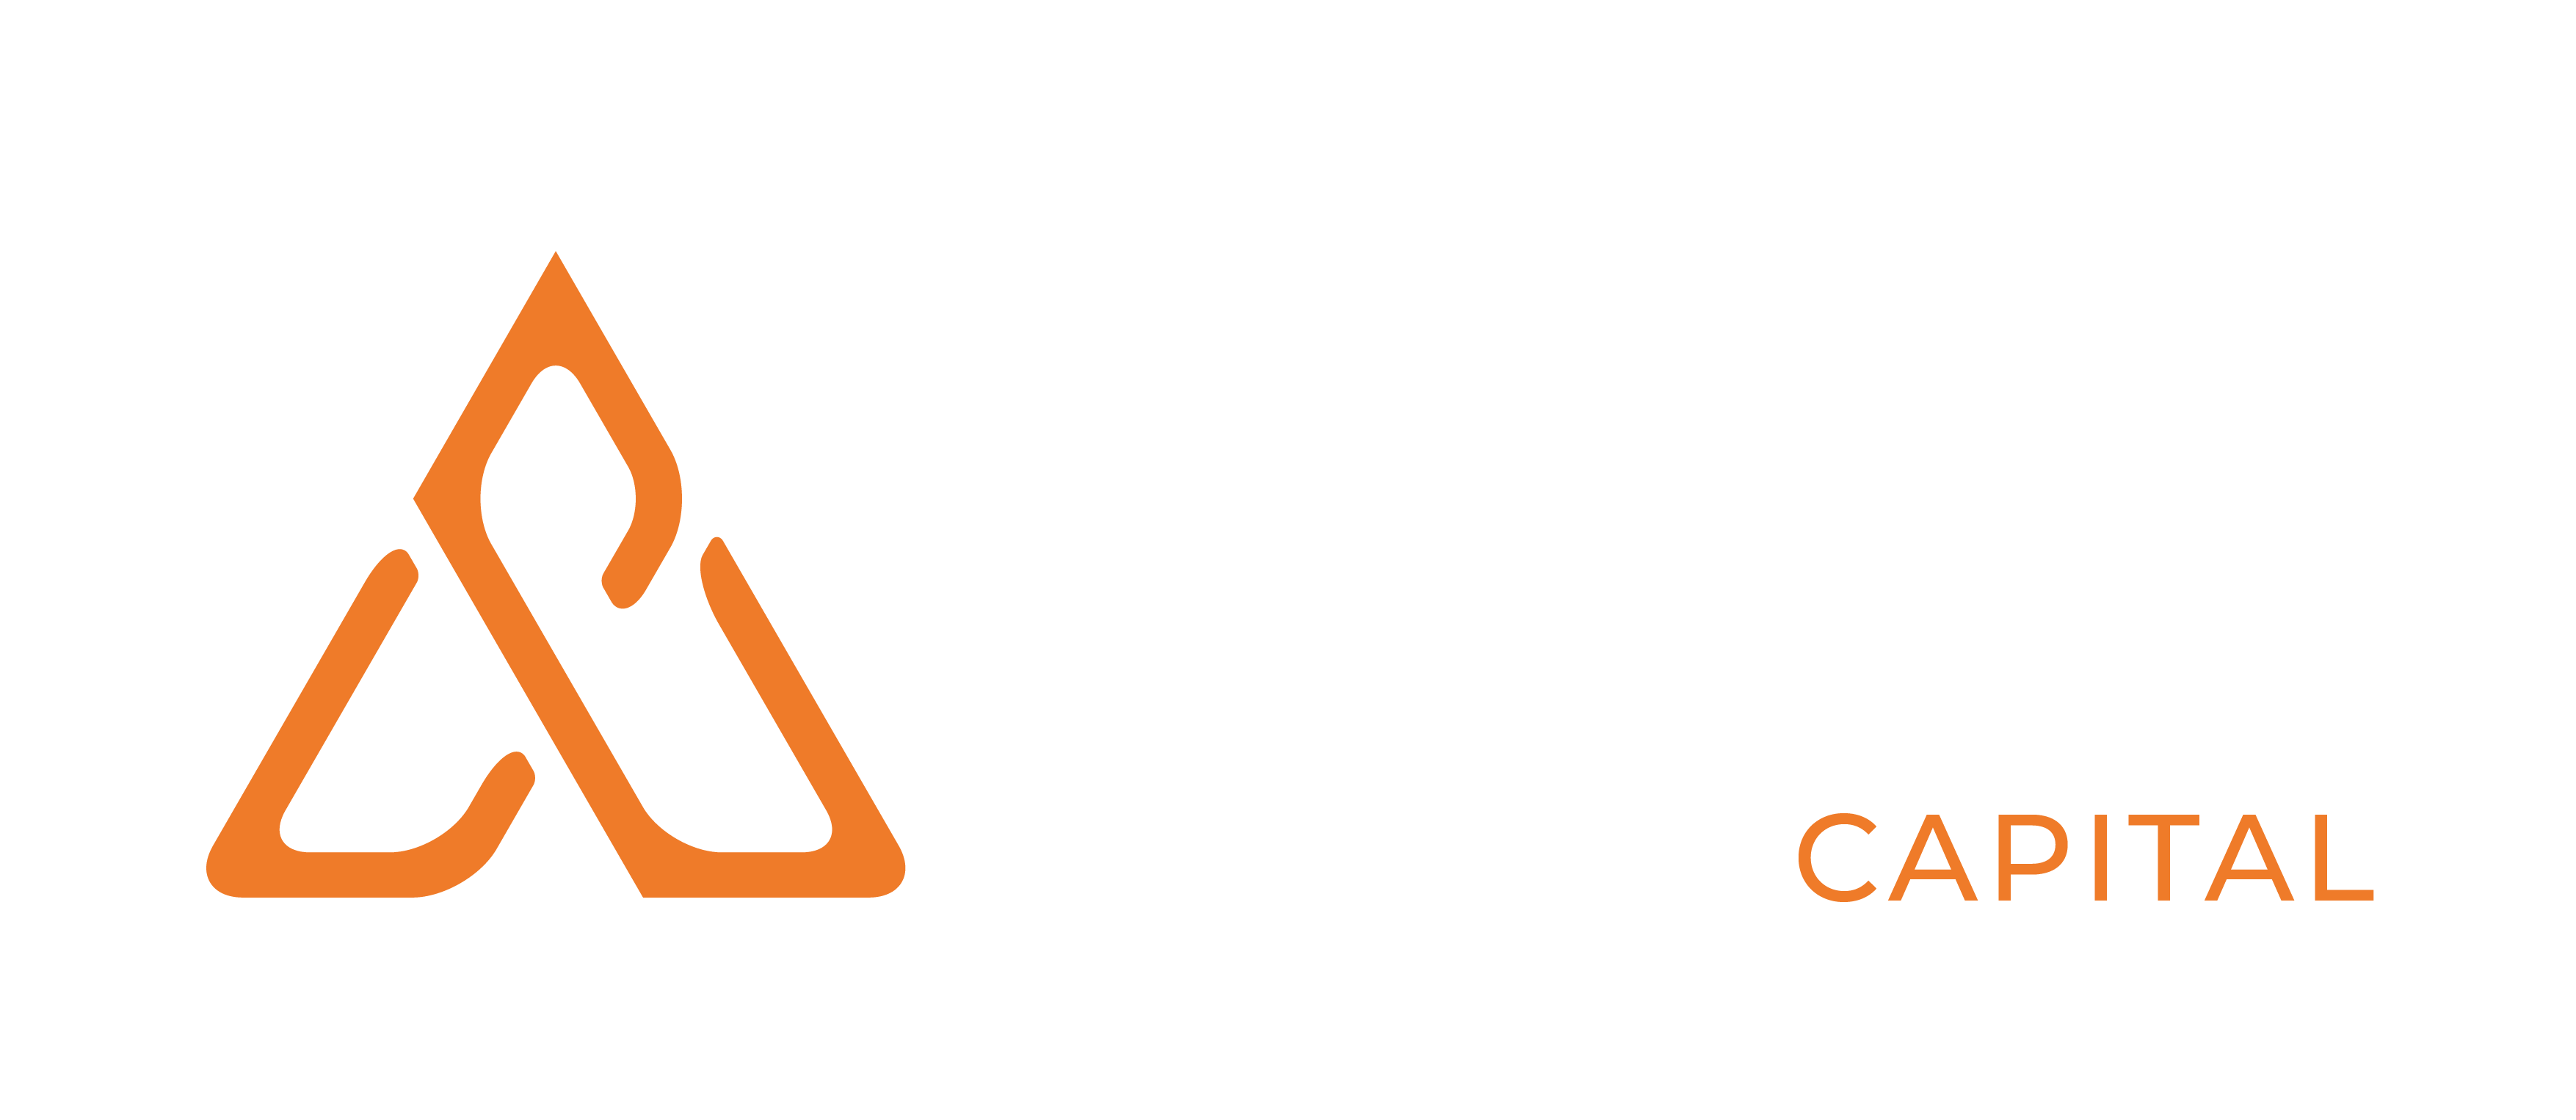 Ariston Capital